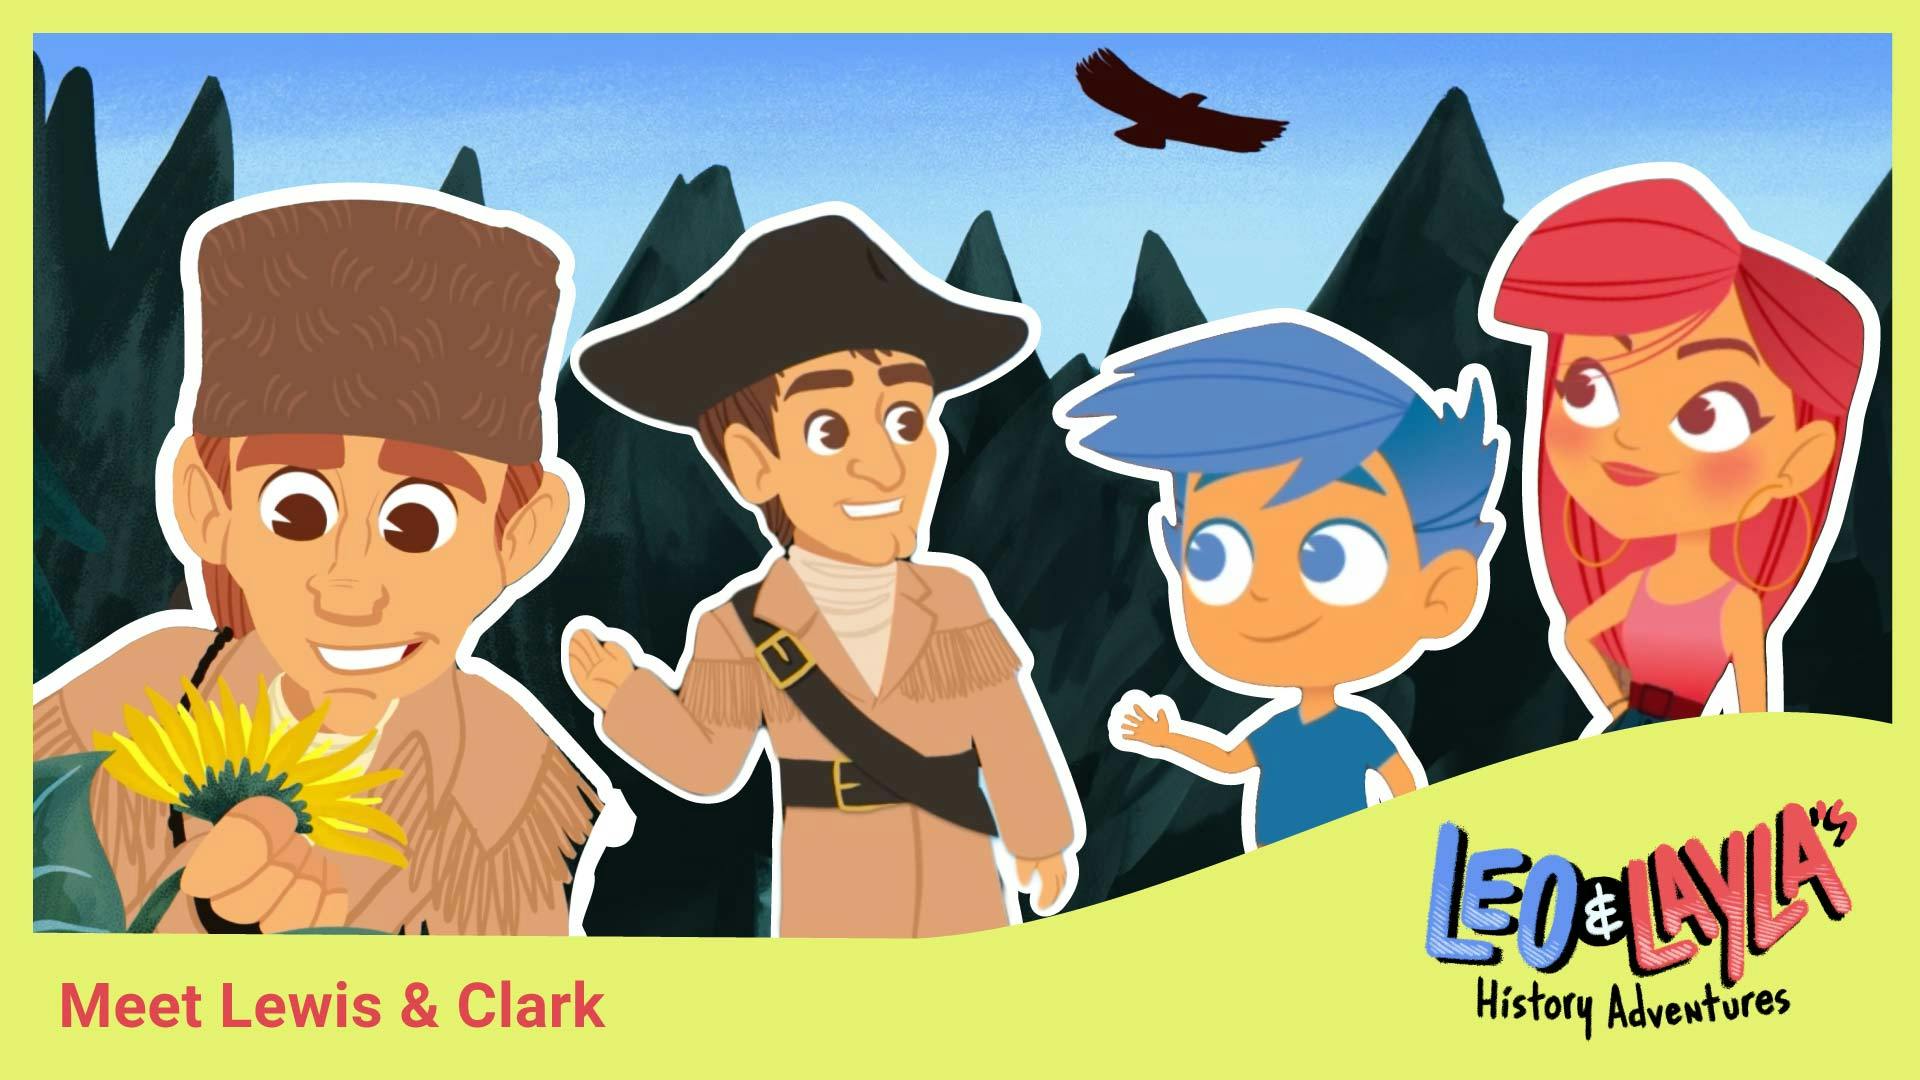 Lewis & Clark: Explorers of the American Frontier